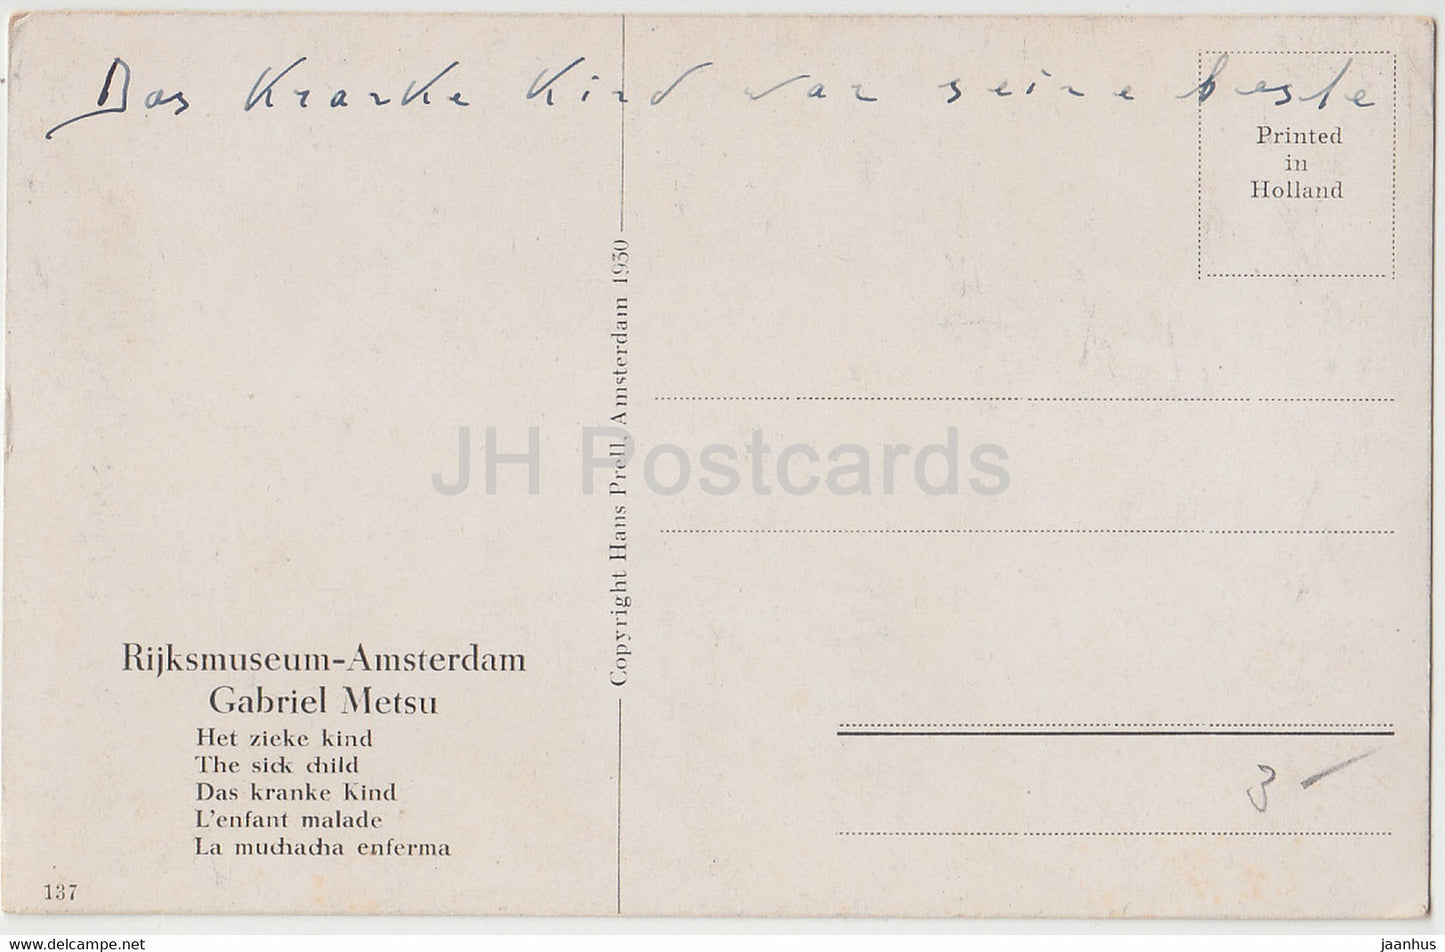 peinture de Gabriel Metsu - L'enfant malade - Rijksmuseum Amsterdam - Carte postale ancienne d'art néerlandais - 1930 - Pays-Bas - utilisé